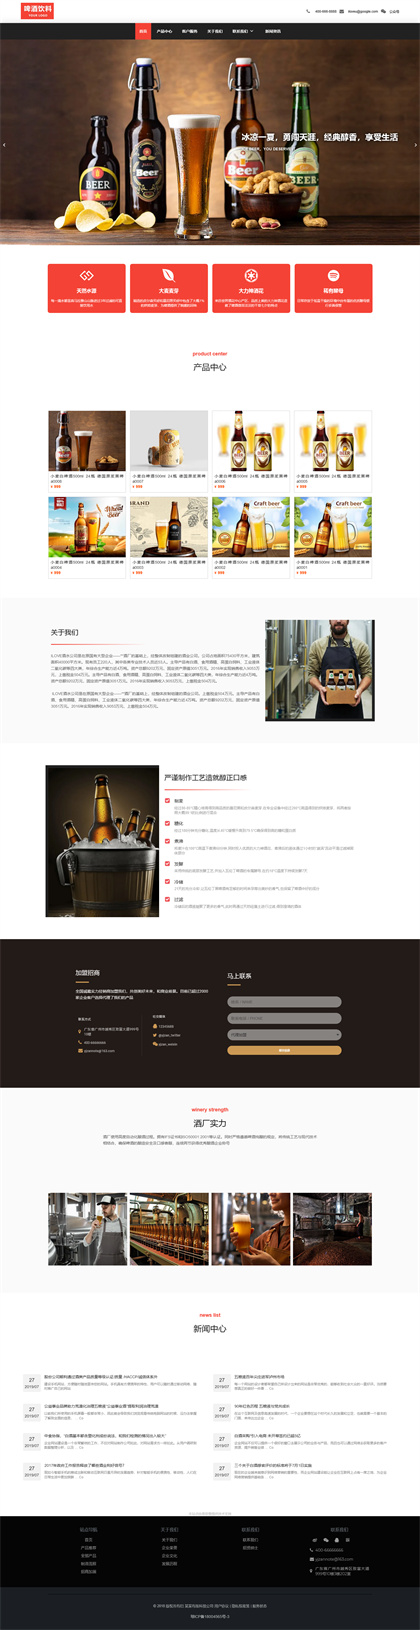 啤酒饮料企业-酒水公司-酒水厂-啤酒厂-饮料公司网站模板网站模板图片